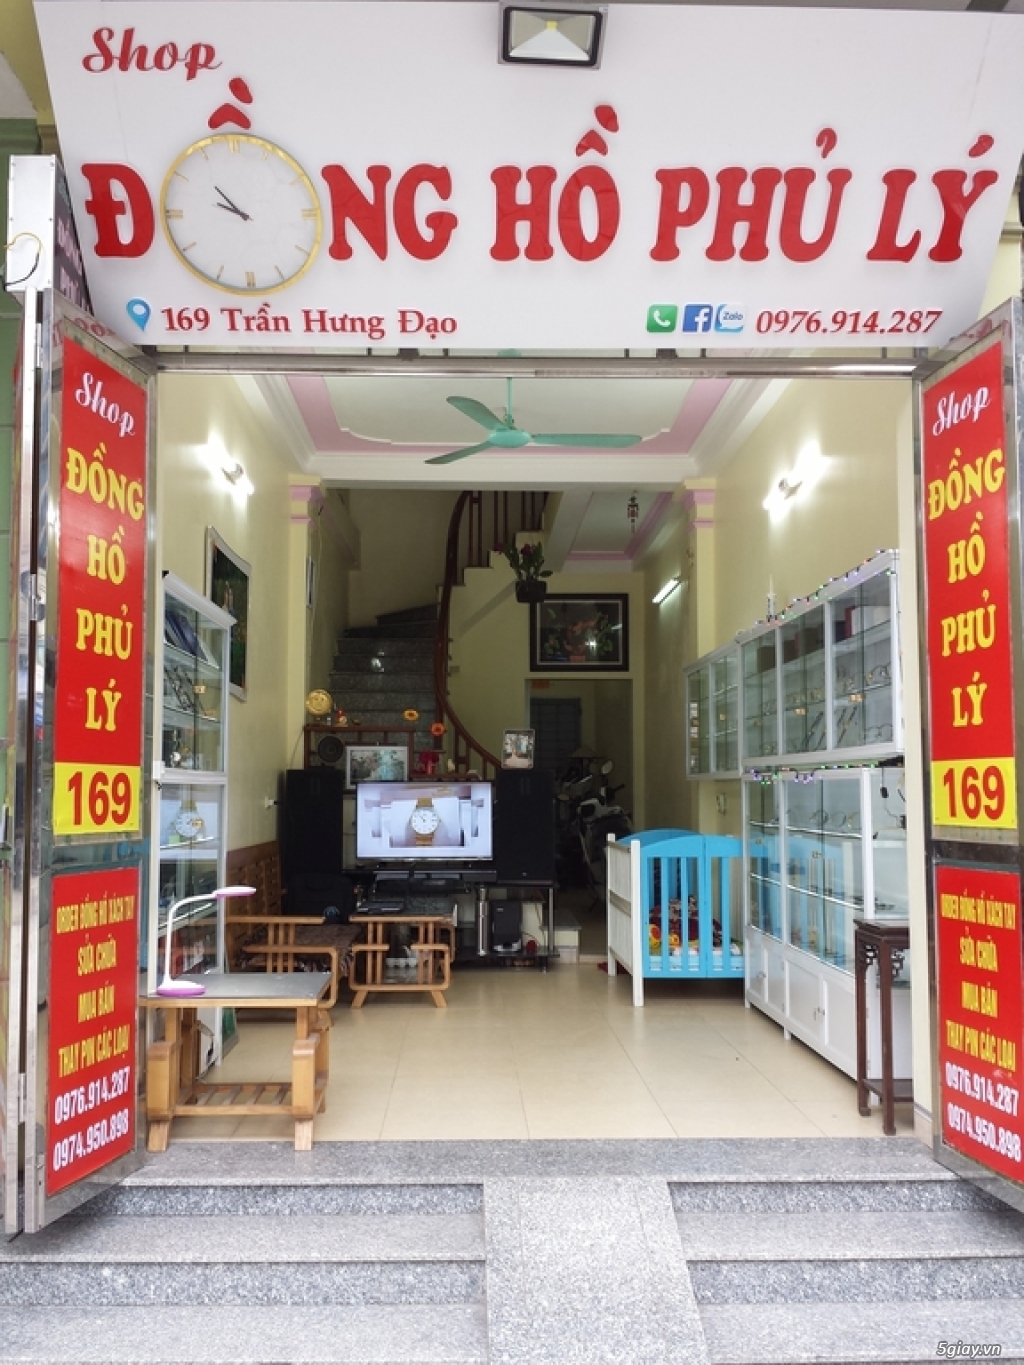 Shop Đồng Hồ Phủ Lý chuyên sửa chữa mua bán đồng hồ nam nữ rẻ bền đẹp.